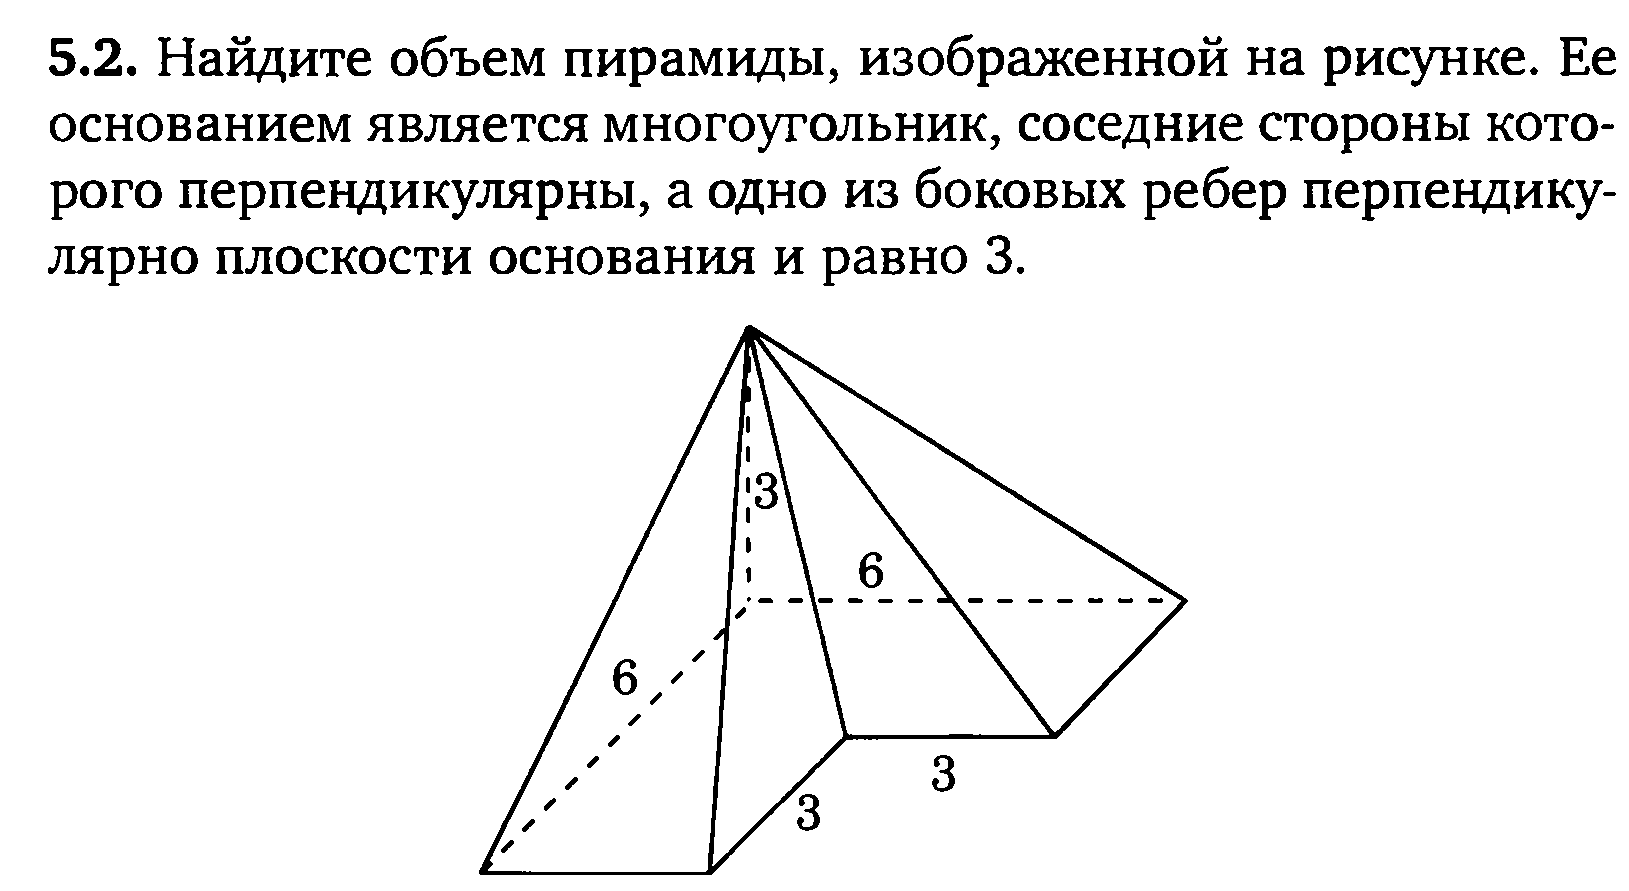 Пирамида изображена на рисунке